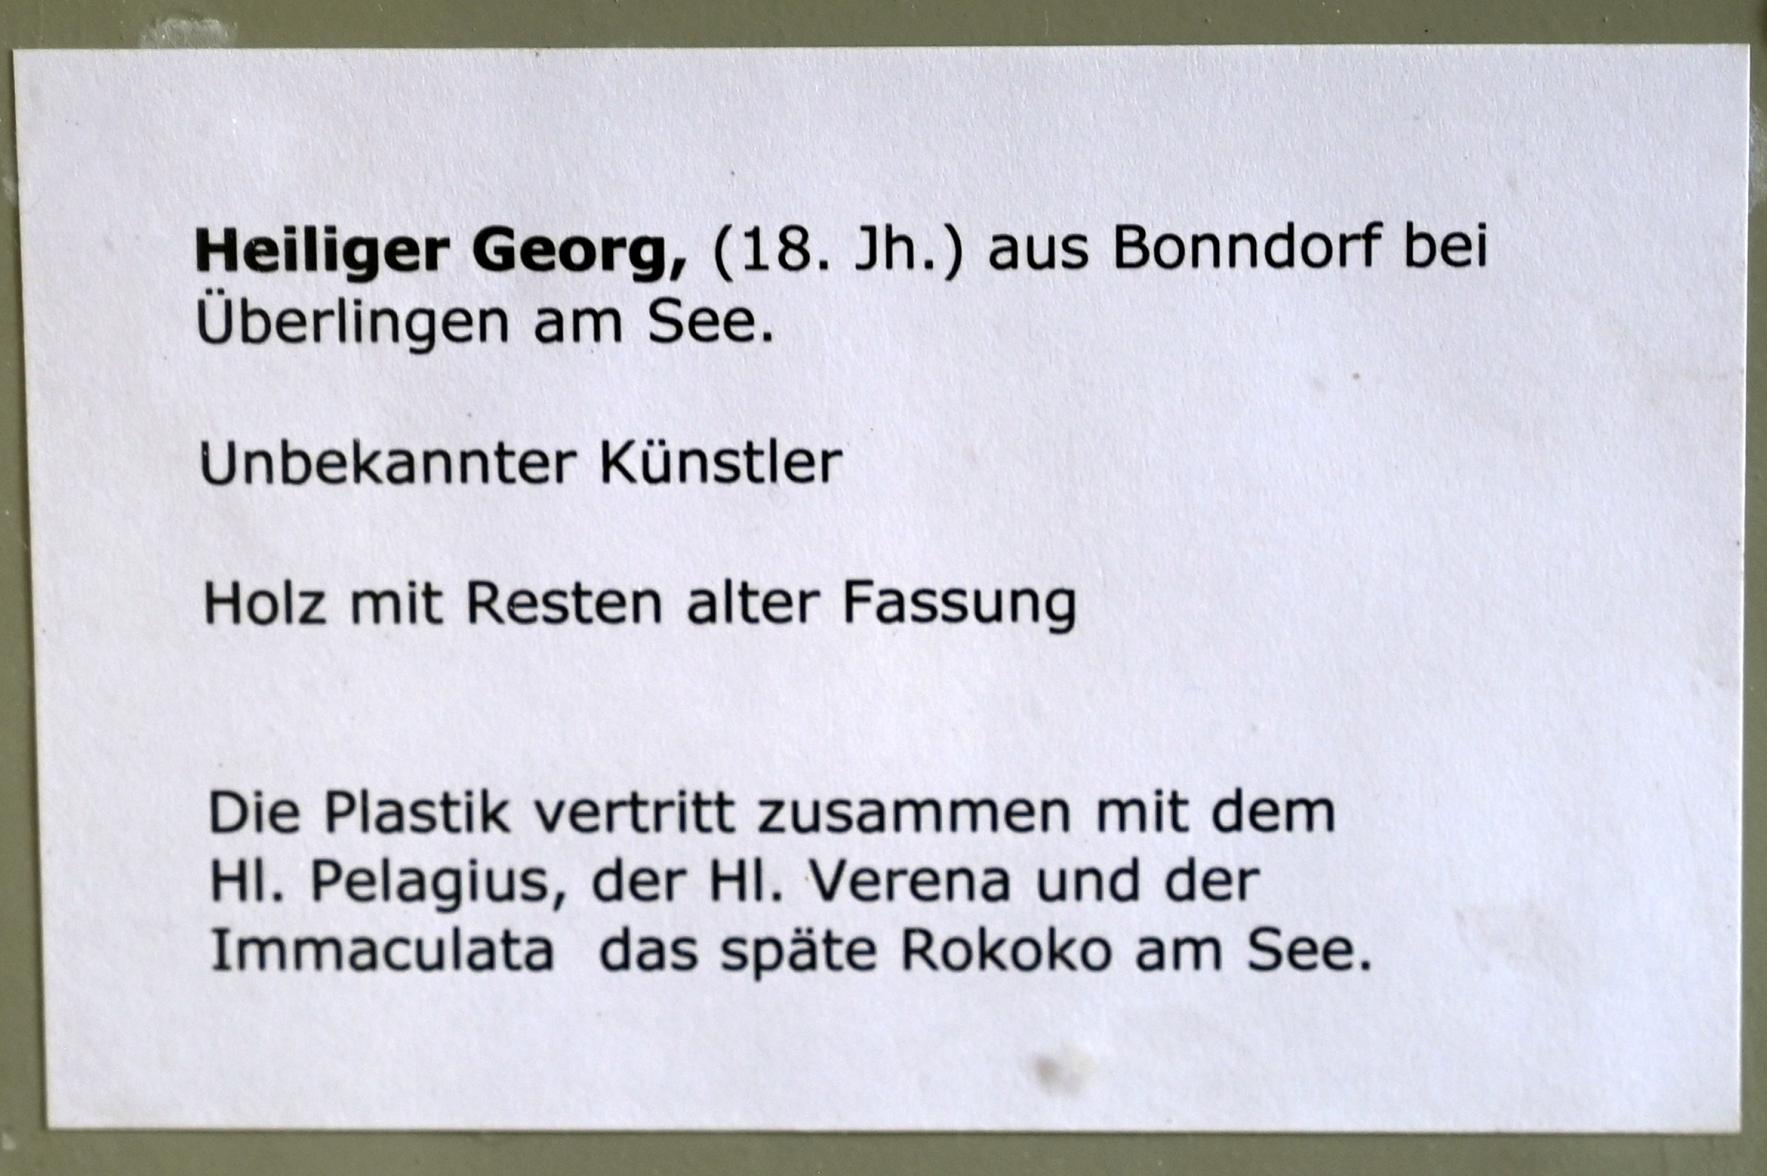 Heiliger Georg, Bonndorf (Überlingen), Kirche St. Pelagius, jetzt Überlingen, Städtisches Museum, Kleiner Barocksaal, 18. Jhd., Bild 5/5